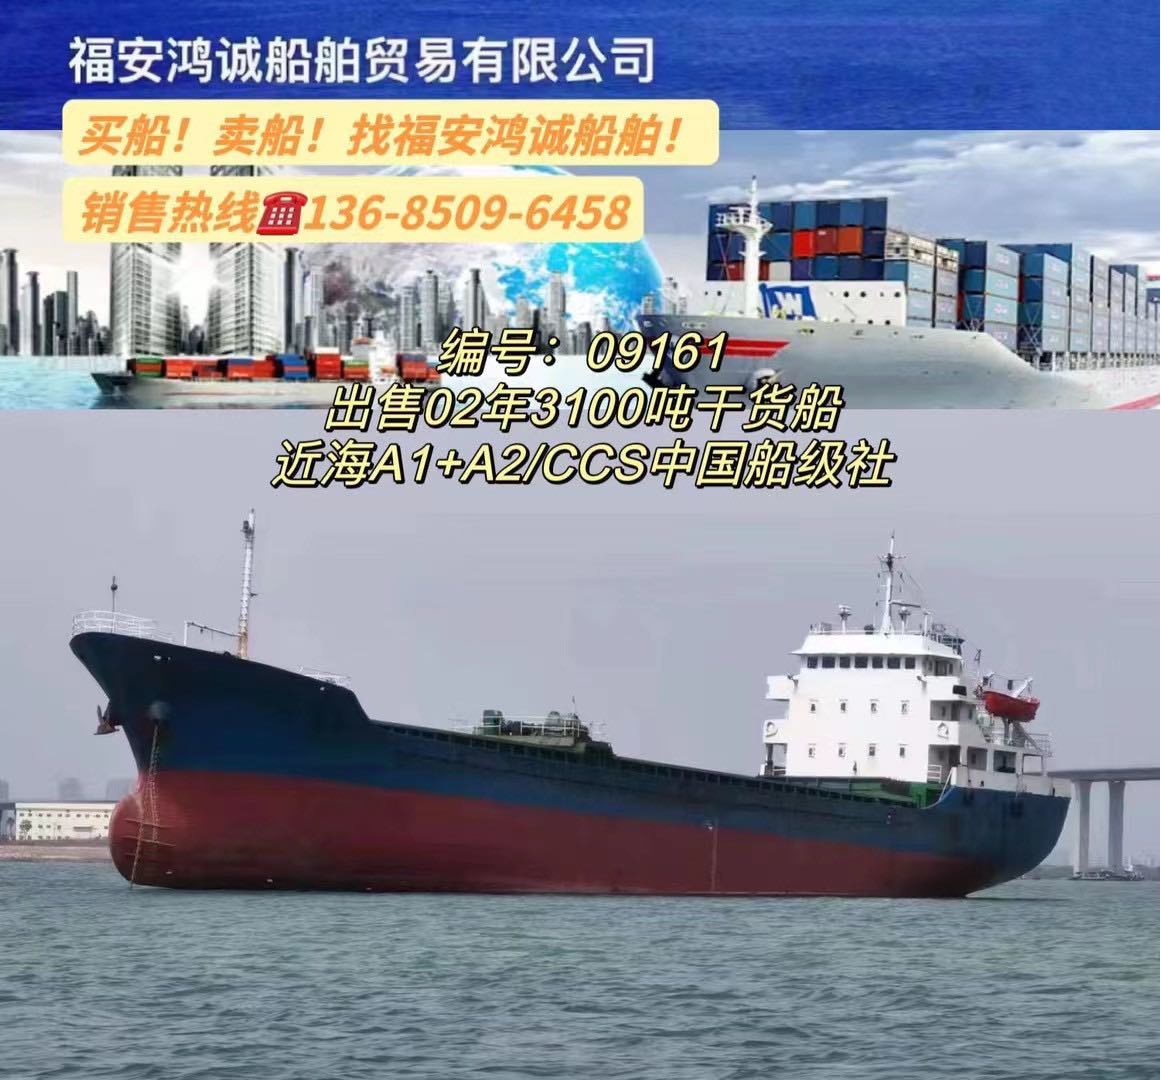 低价出3100吨干货船